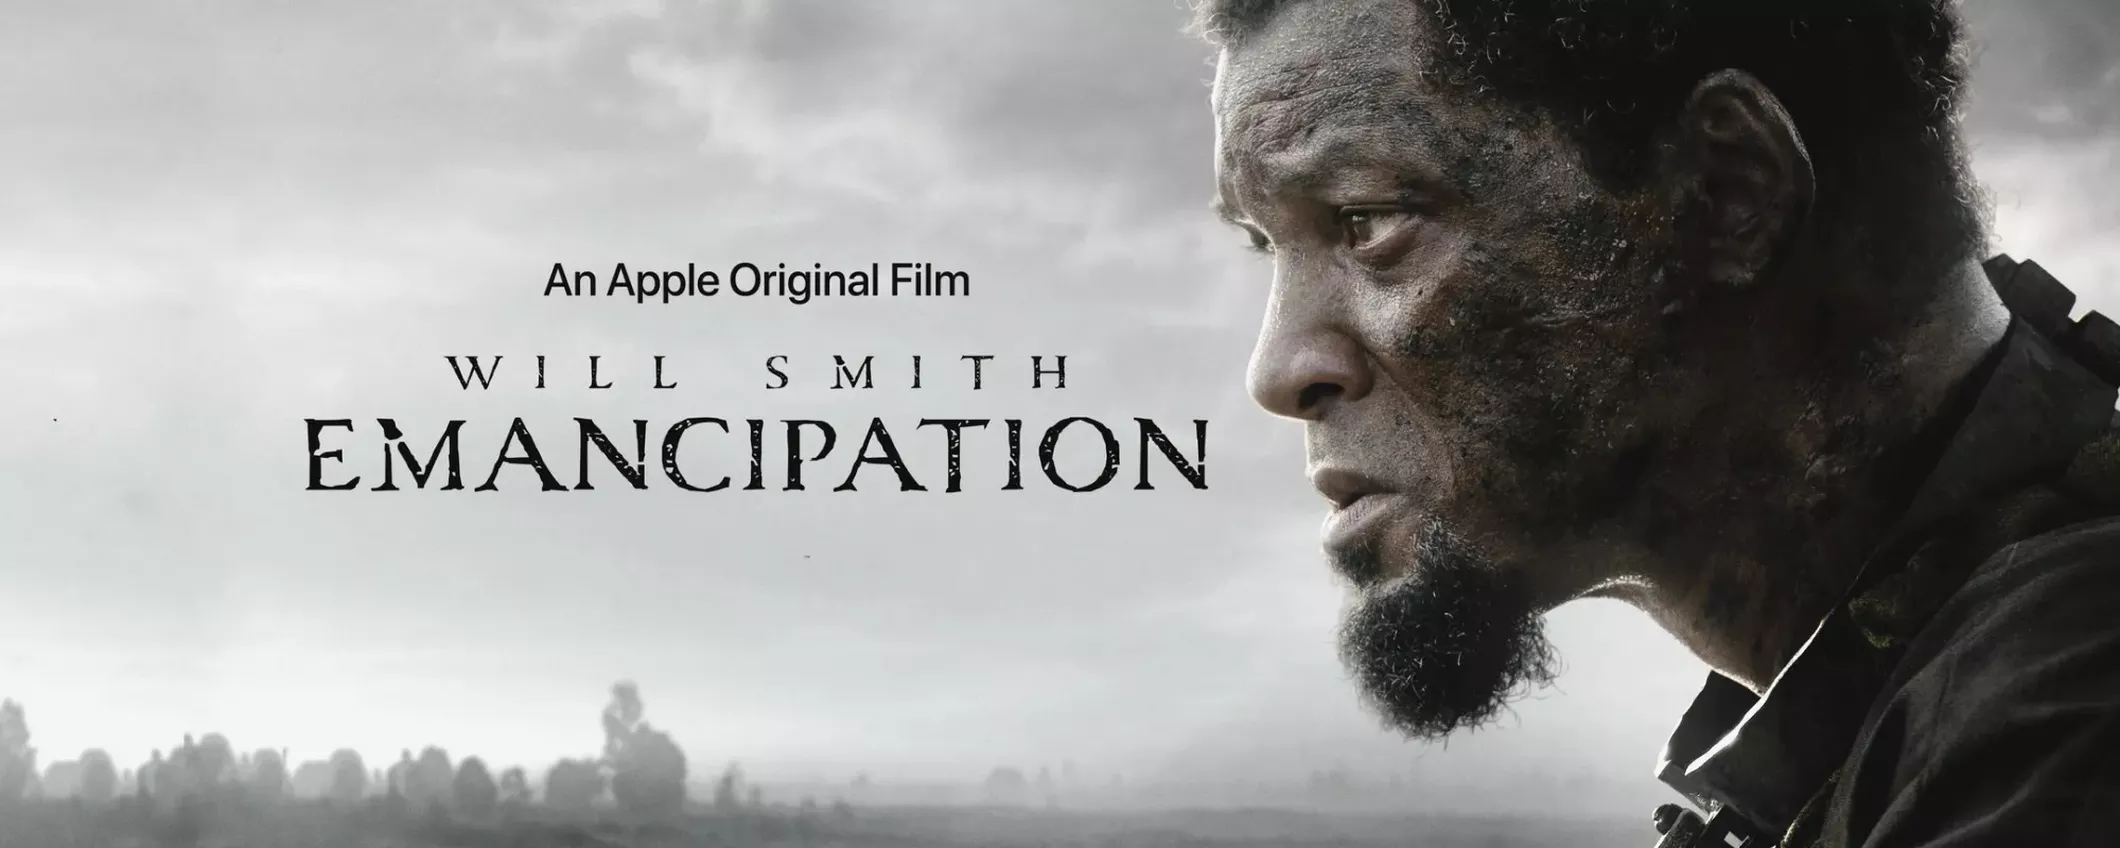 Will Smith su Apple TV+ con Emancipation dopo lo schiaffo agli Oscar